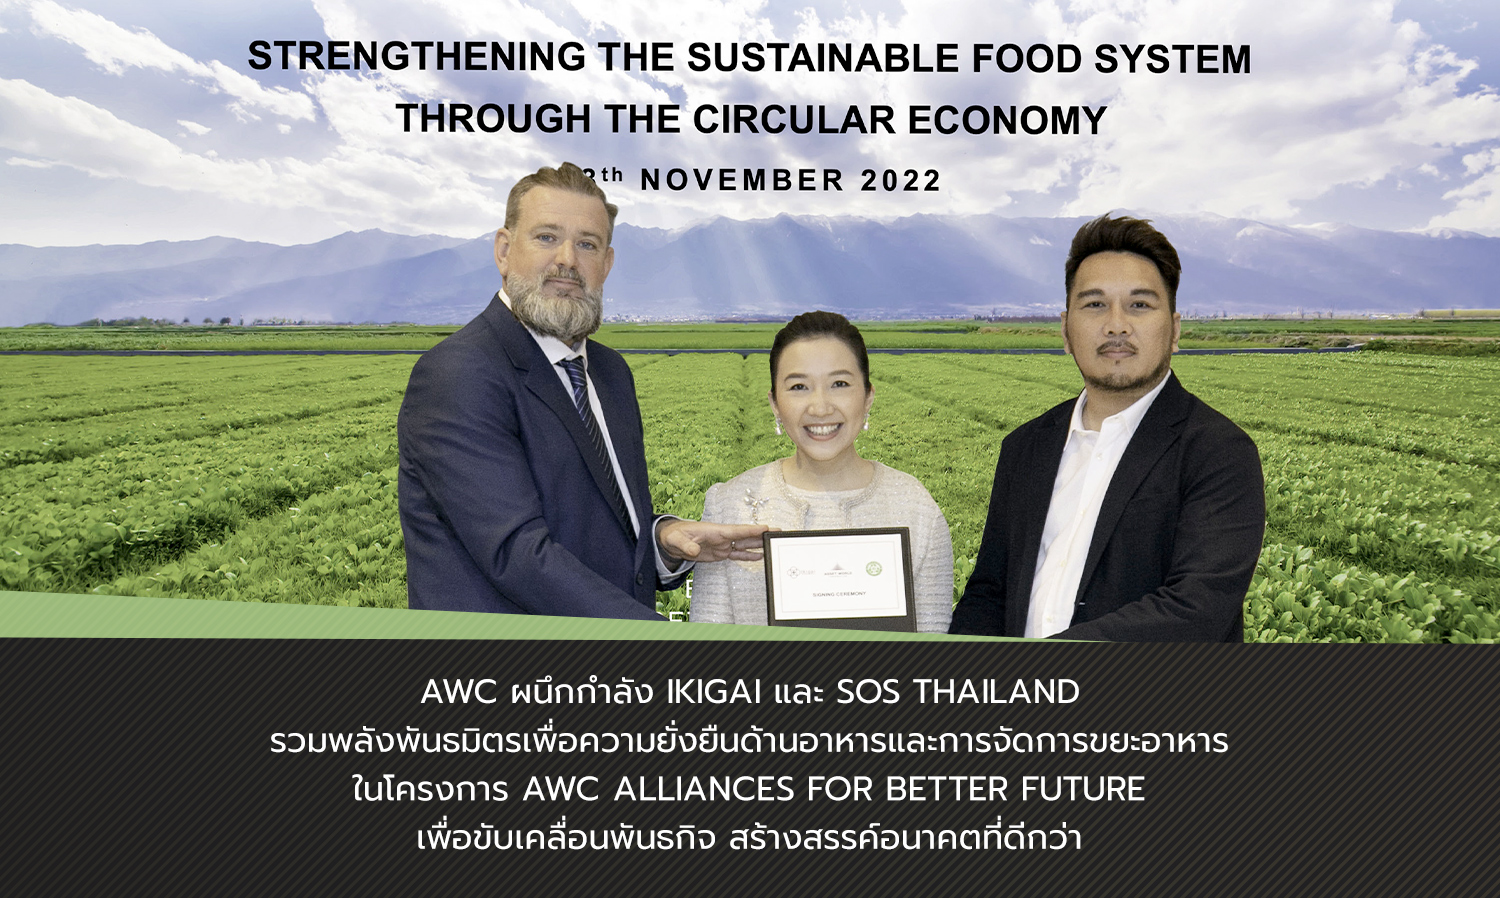 AWC ผนึกกำลัง Ikigai และ SOS Thailand รวมพลังพันธมิตรเพื่อความยั่งยืนด้านอาหารและการจัดการขยะอาหาร ในโครงการ AWC Alliances for Better Future เพื่อขับเคลื่อนพันธกิจ สร้างสรรค์อนาคตที่ดีกว่า